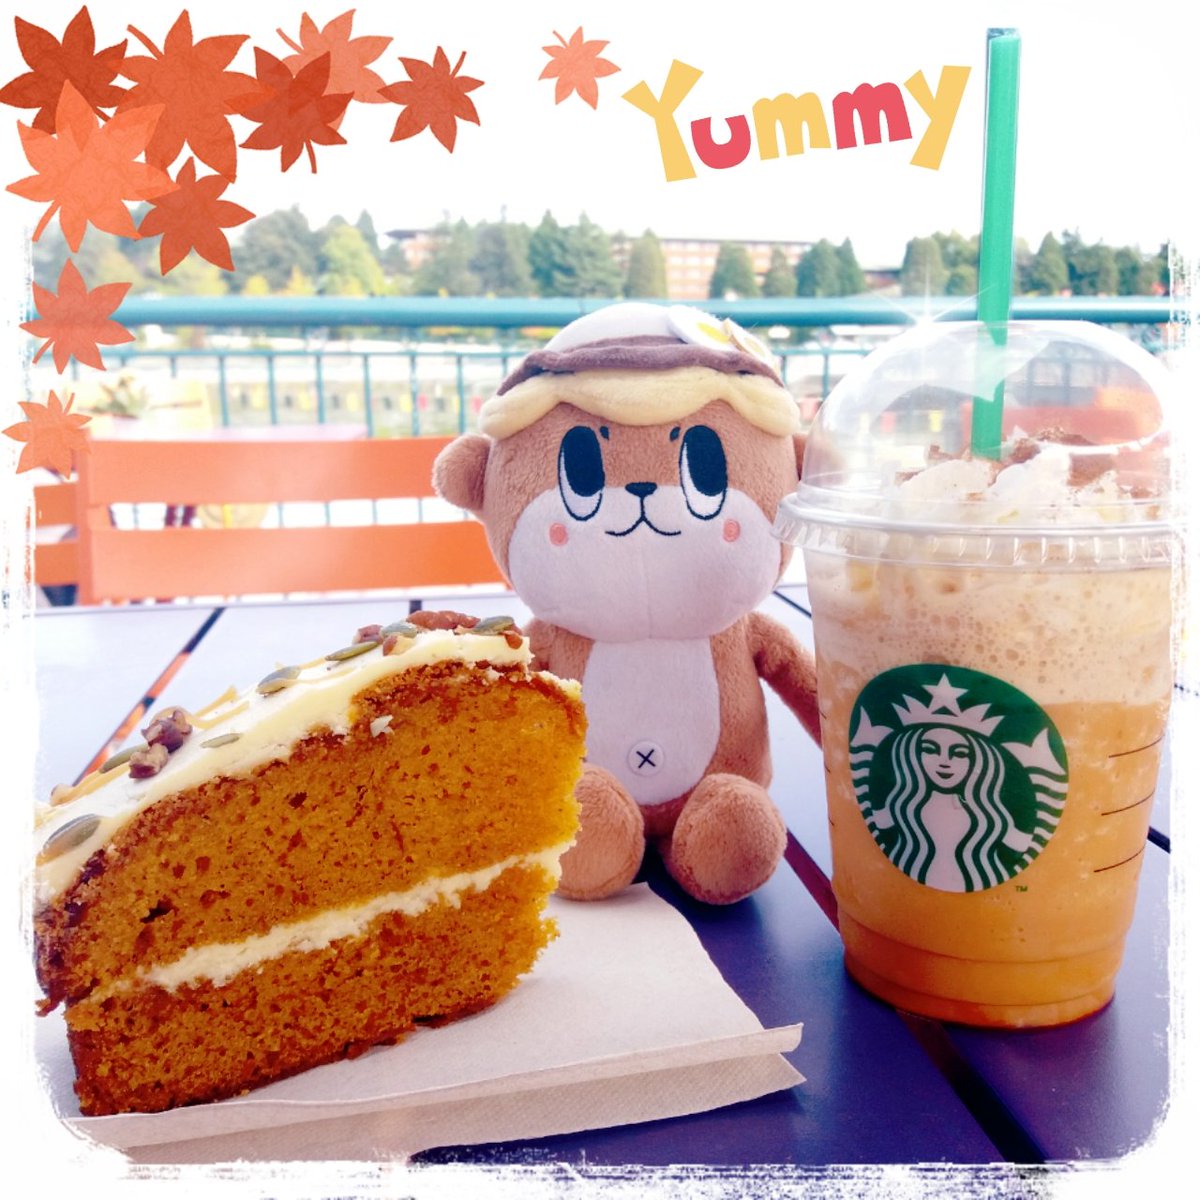 J'adore  l'automne et ses saveurs. Shinjo-kun, Pumpkin cake & pumpkin frappuccino 🍃🍂🍁🍵🍪
#shinjokun #susaki @susaki_city_PR #yurukyara #starbuckscoffee #disneyvillage